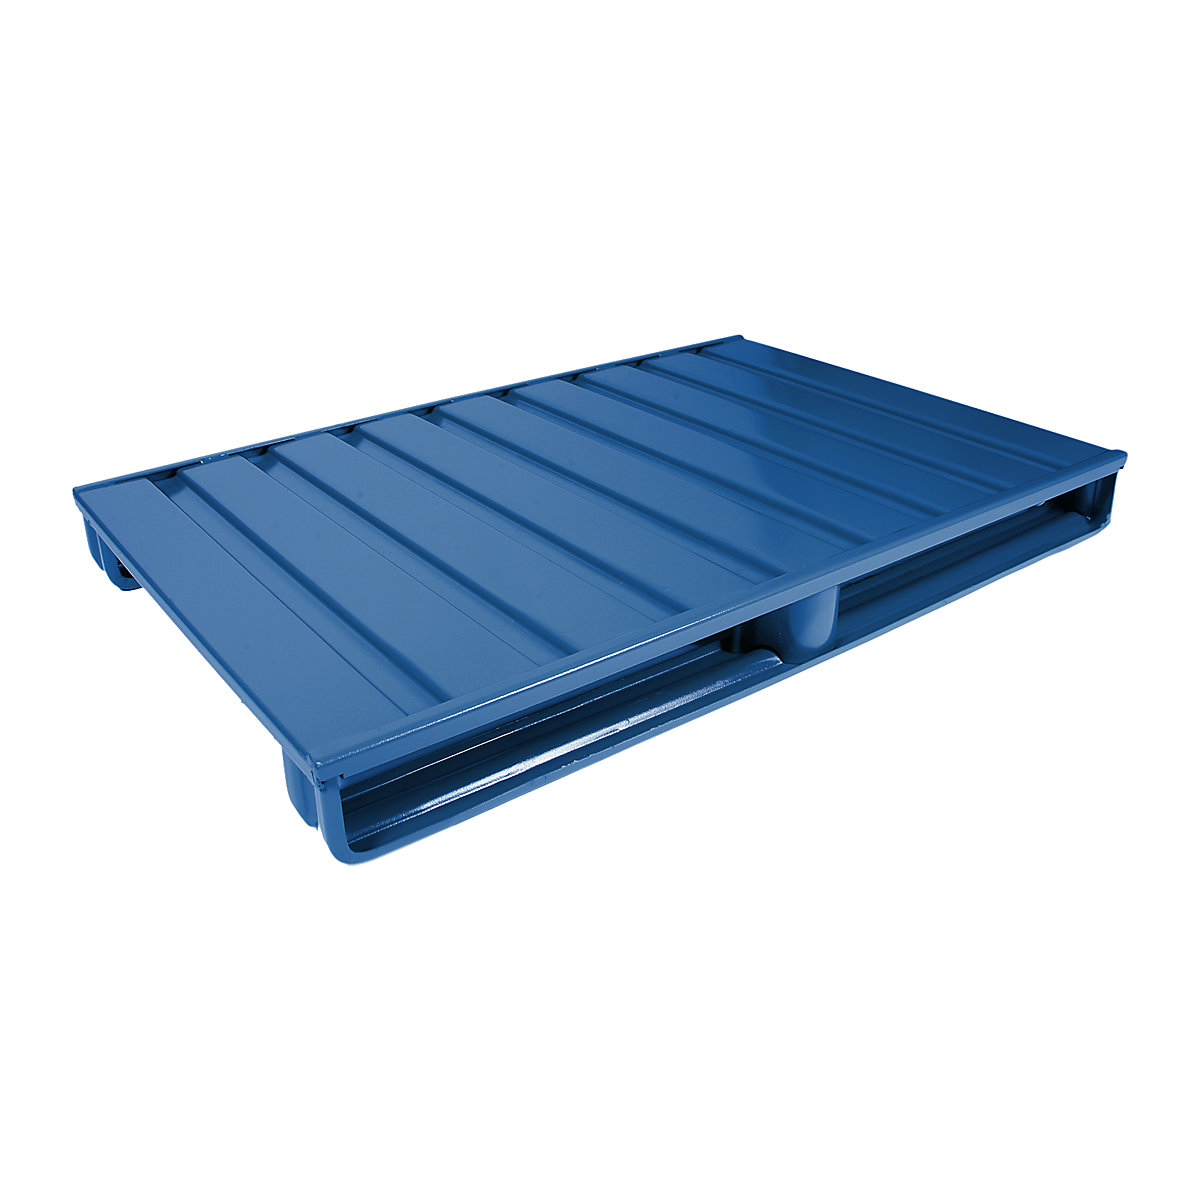 Čelična ravna paleta – Heson, DxŠ 1200 x 800 mm, nosivost 2000 kg, u encijan plavoj boji-4